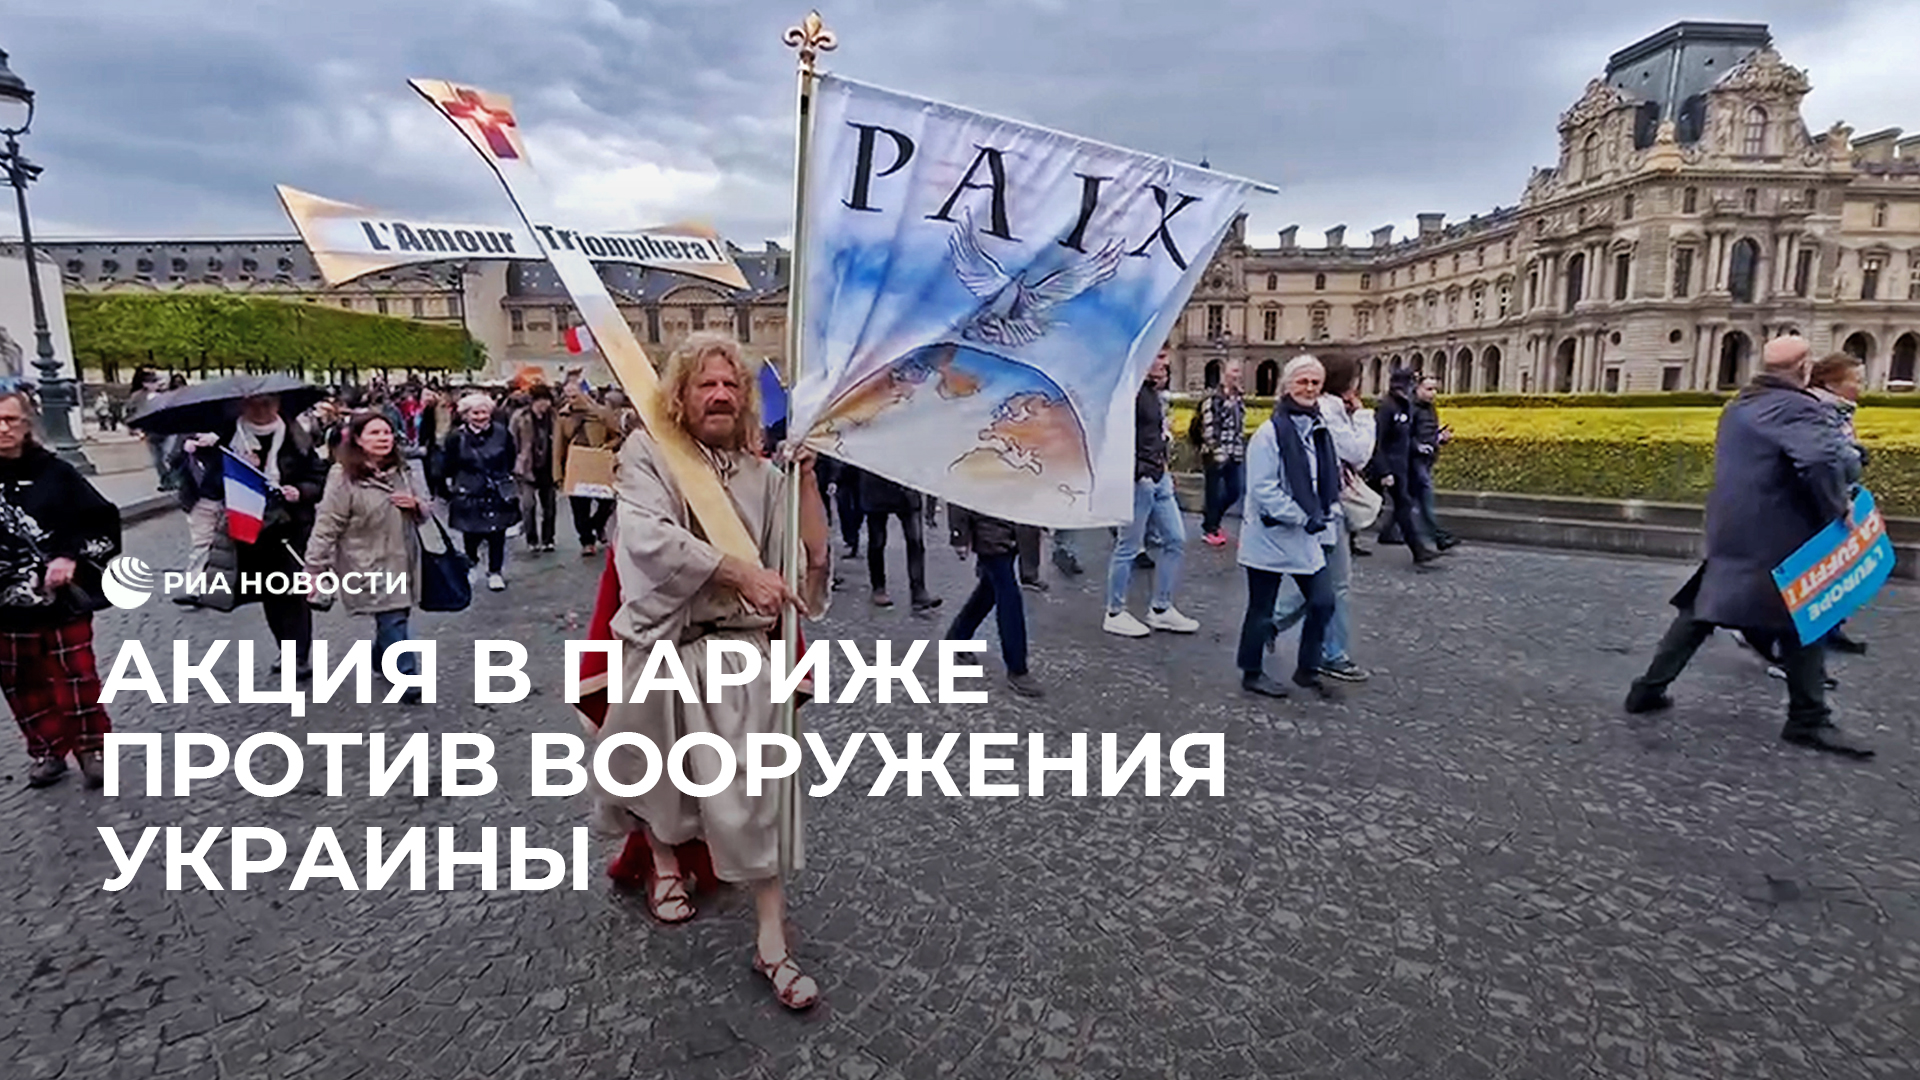 Акция в Париже против вооружения Украины